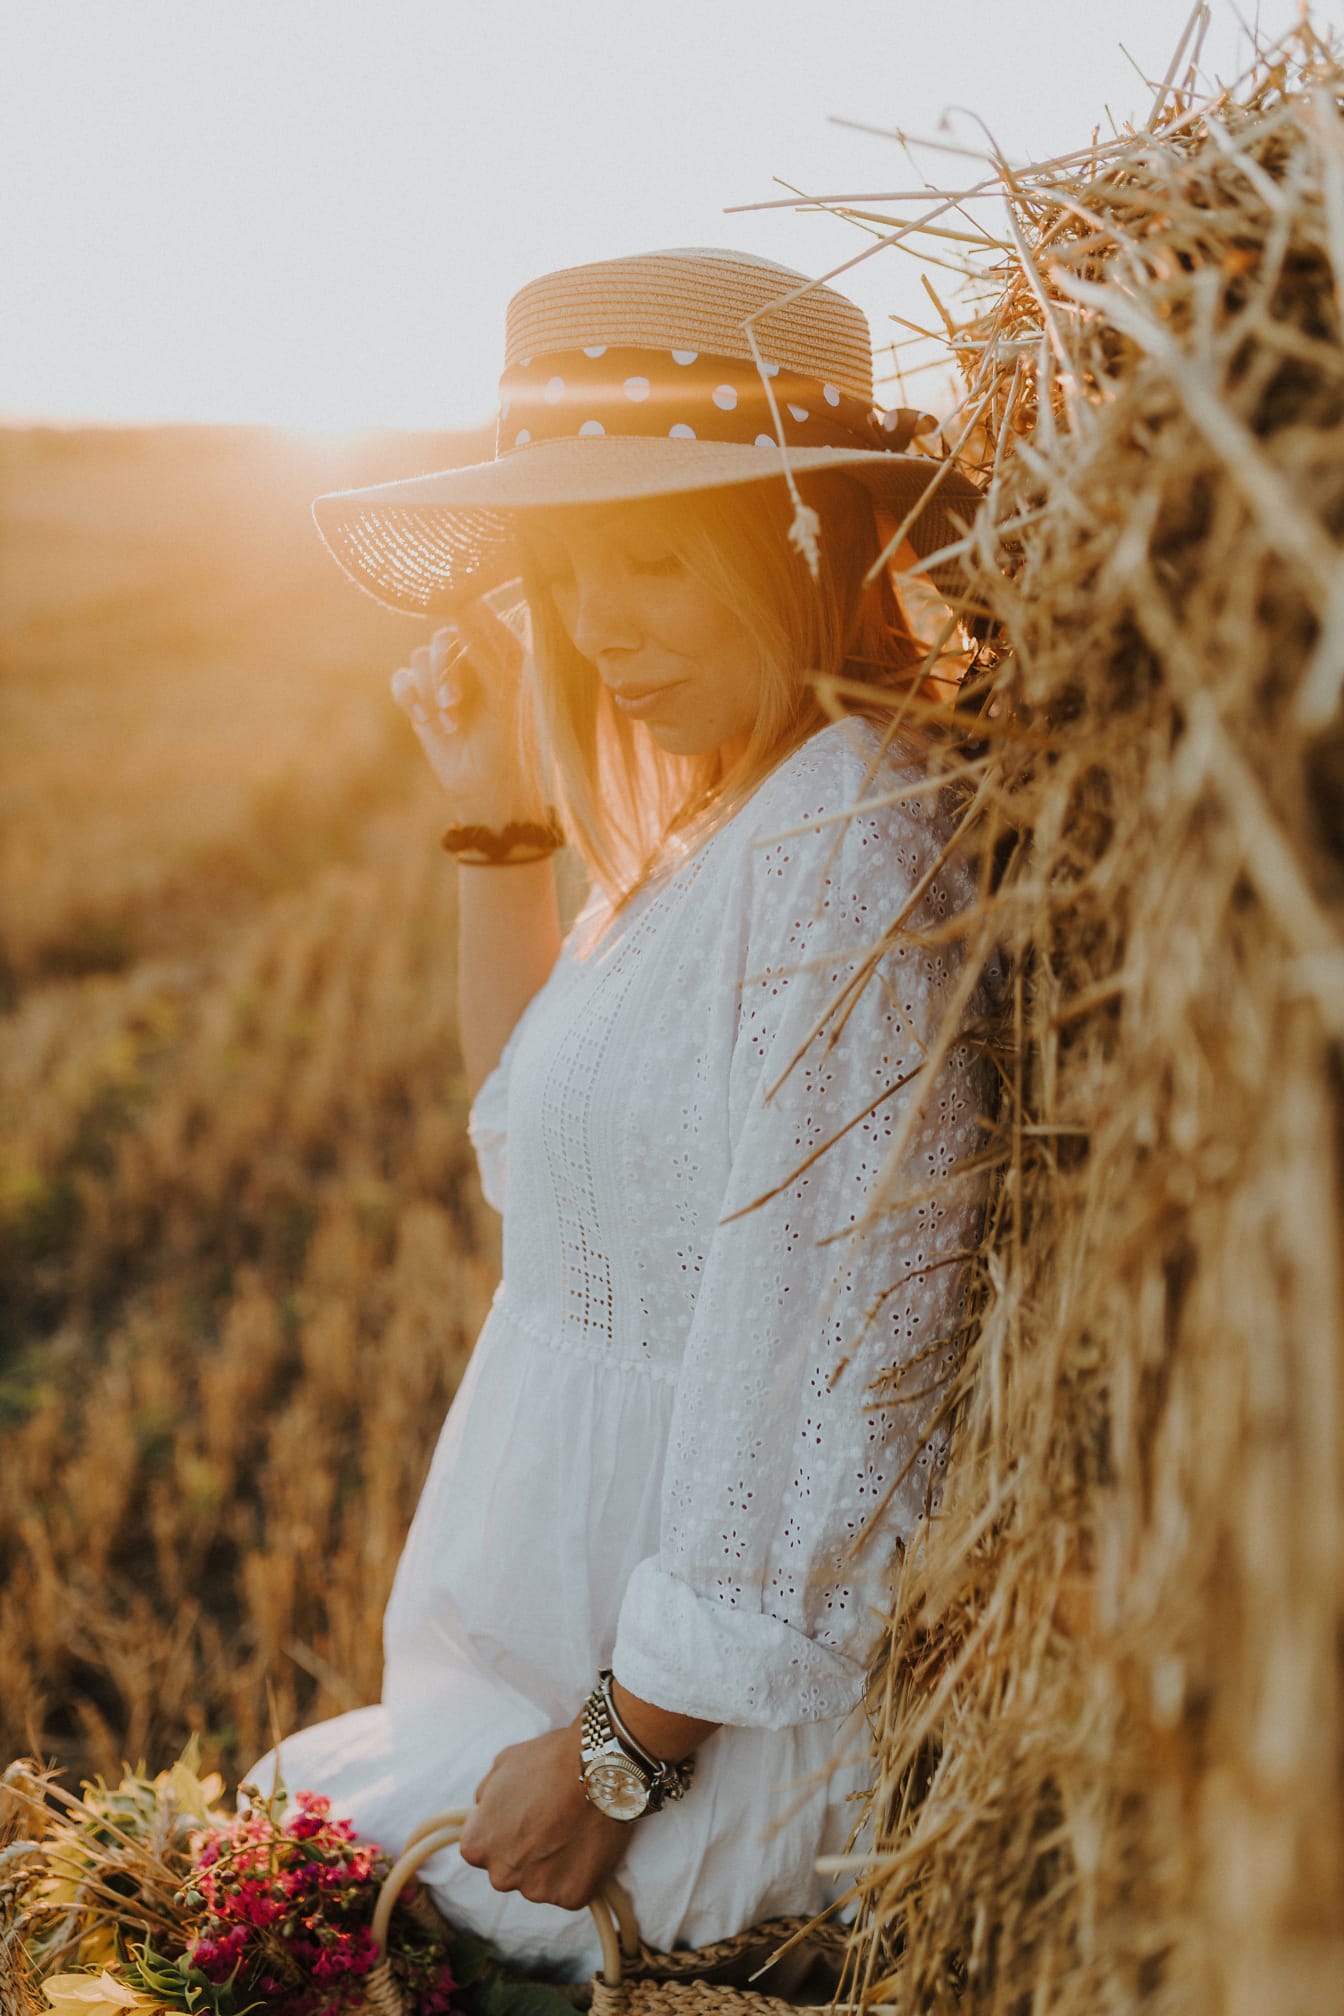 Mujer joven bonita con sombrero junto al pajar en el campo de trigo